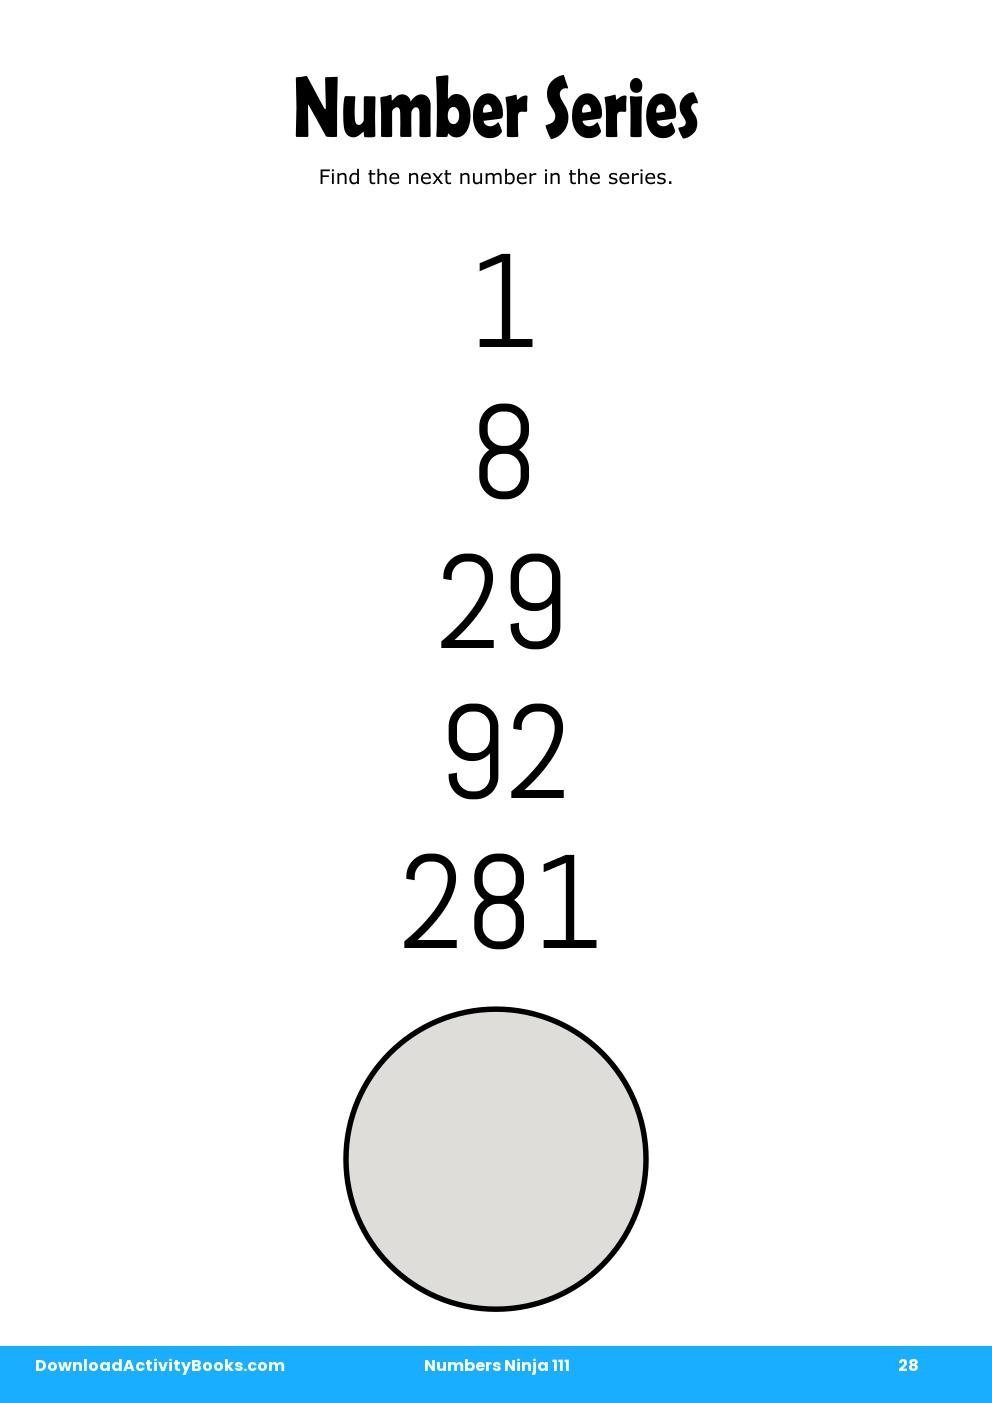 Number Series in Numbers Ninja 111